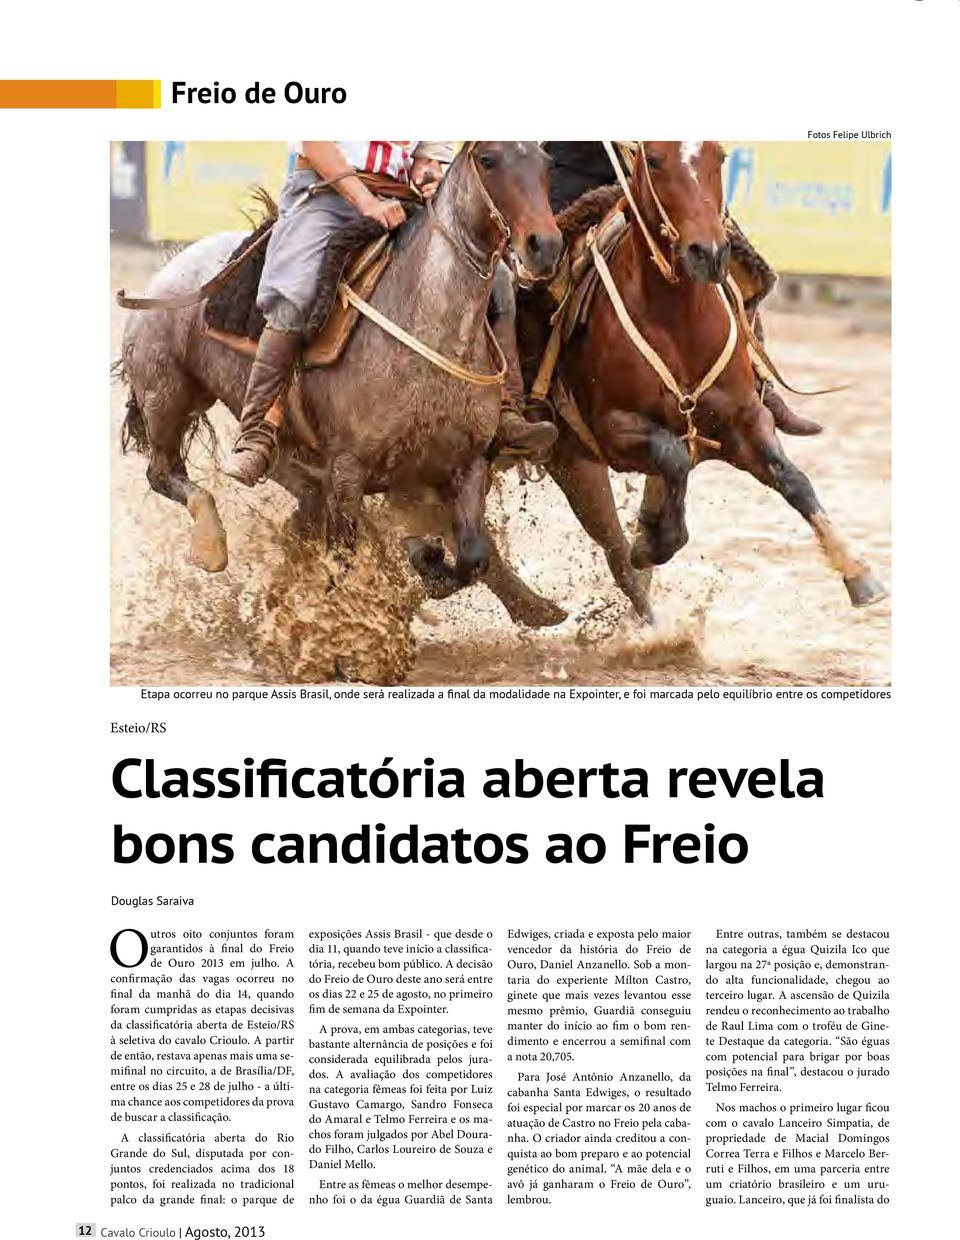 A confirmação das vagas ocorreu no final da manhã do dia 14, quando foram cumpridas as etapas decisivas da classificatória aberta de Esteio/RS à seletiva do cavalo Crioulo.